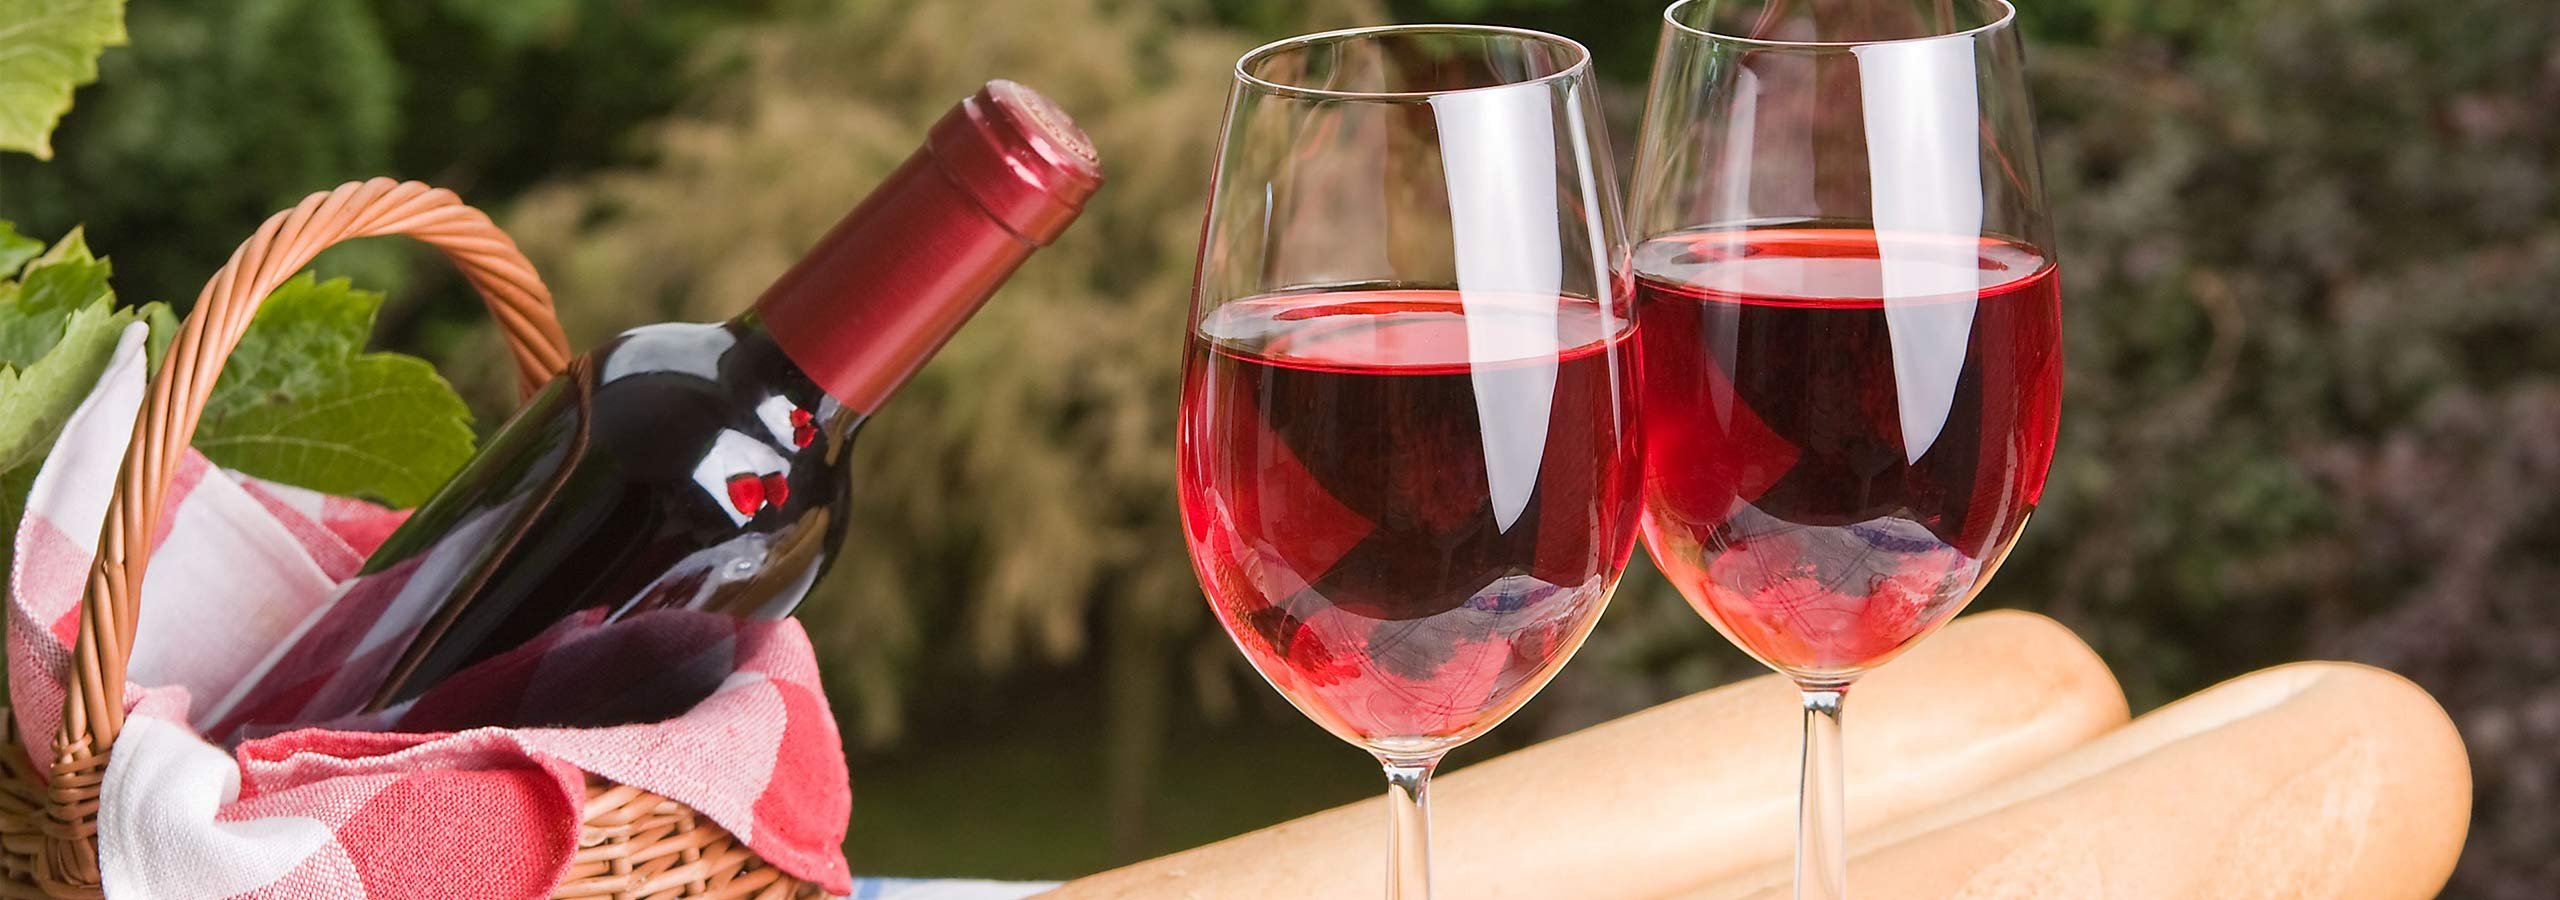 Розовое вино в бокале